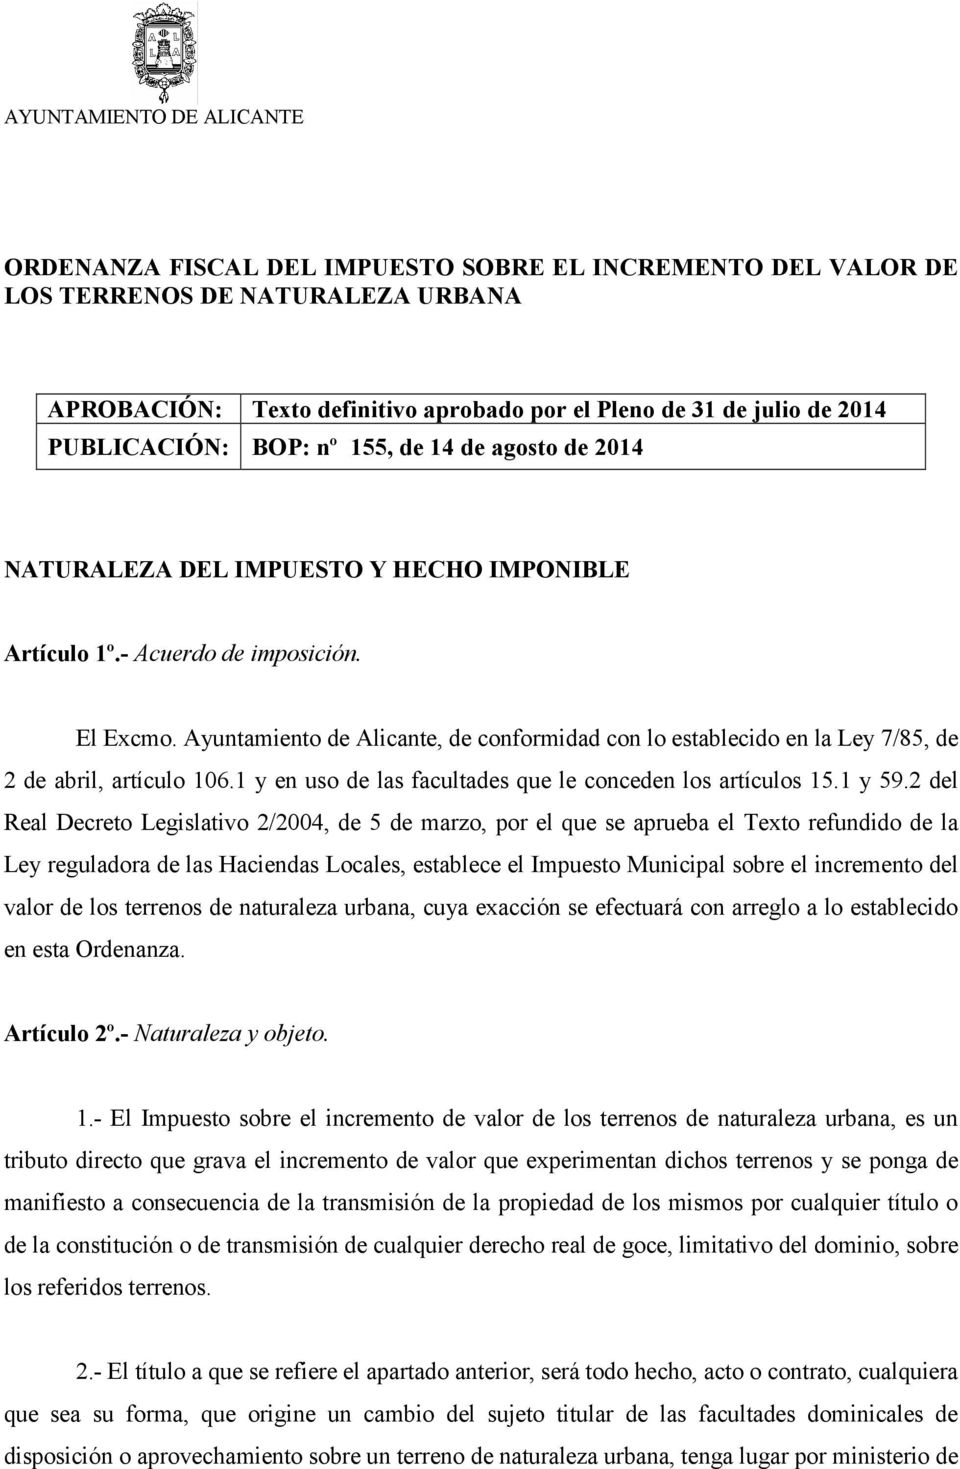 Ayuntamiento de Alicante, de conformidad con lo establecido en la Ley 7/85, de 2 de abril, artículo 106.1 y en uso de las facultades que le conceden los artículos 15.1 y 59.